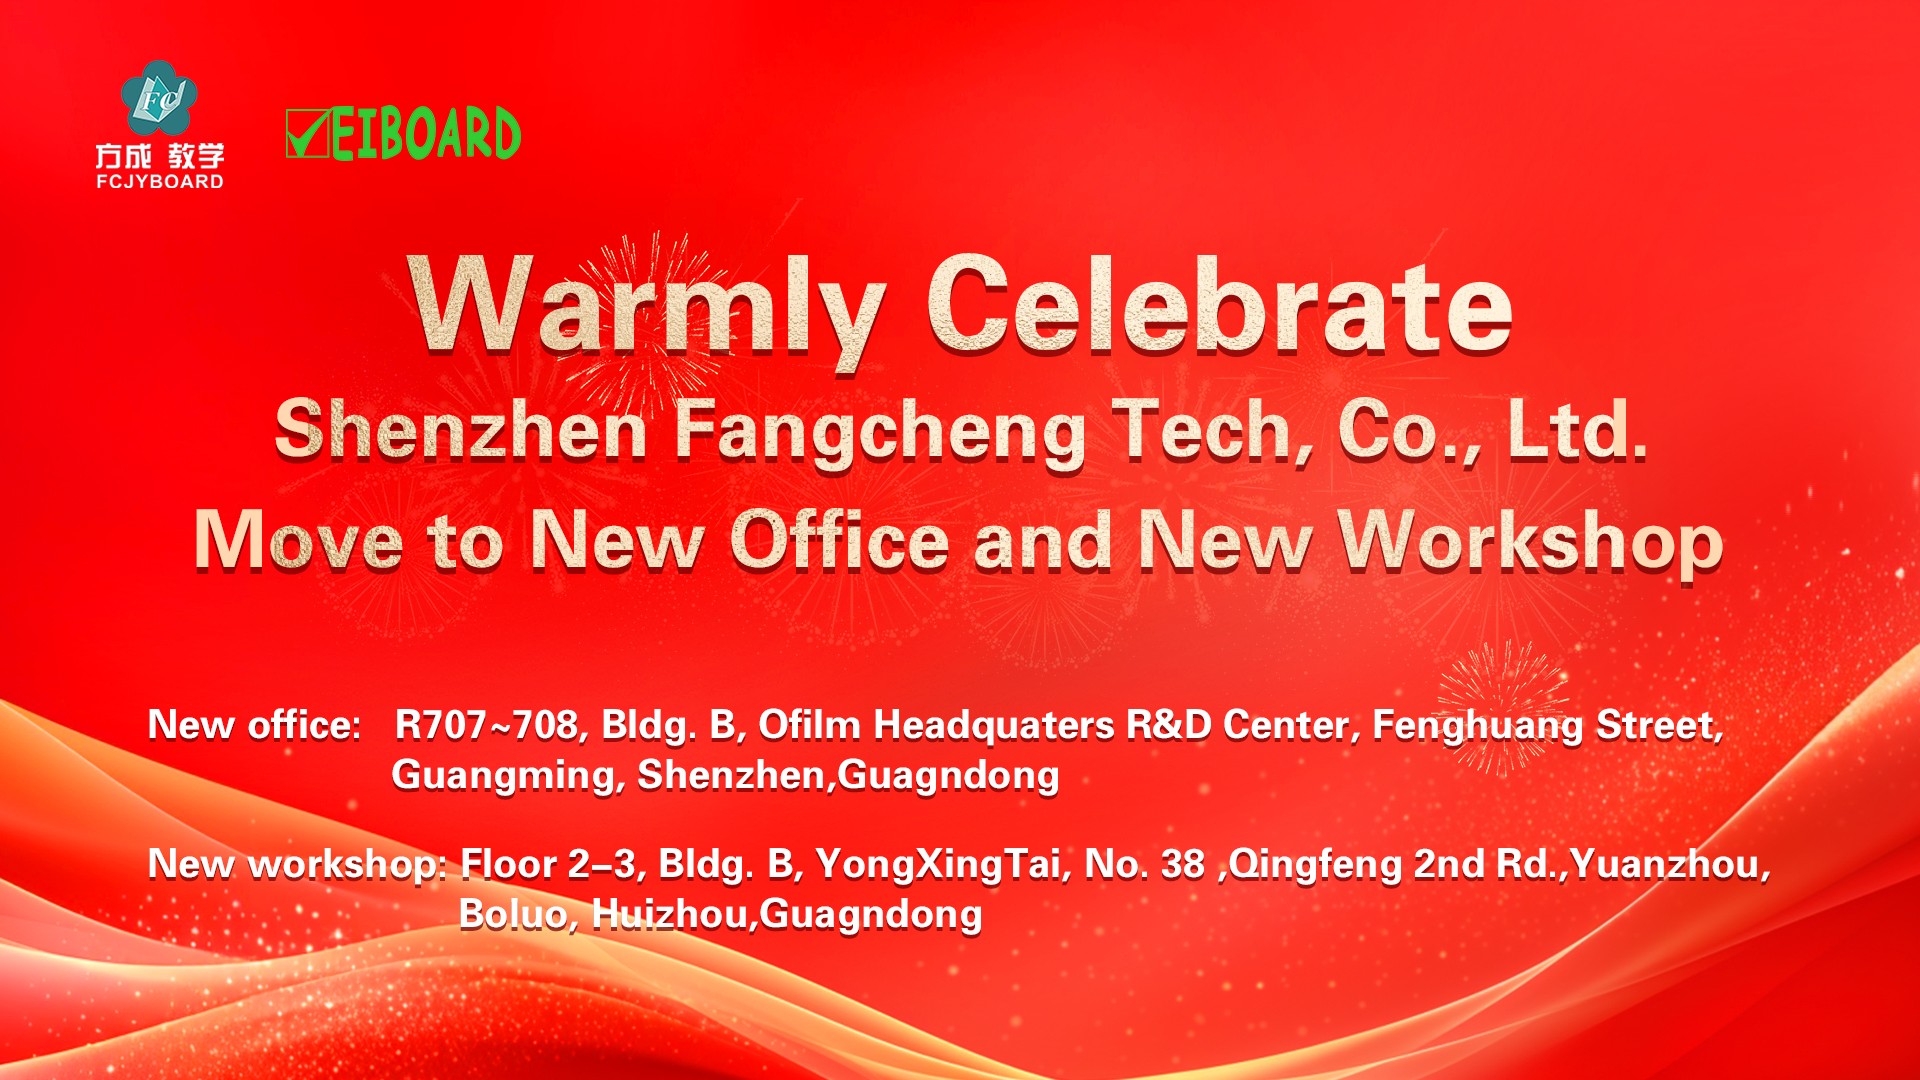 เฉลิมฉลองอย่างอบอุ่นเซินเจิ้น Fangcheng Tech Co., Ltd. ย้ายไปที่สำนักงานใหม่และเวิร์กช็อปใหม่!